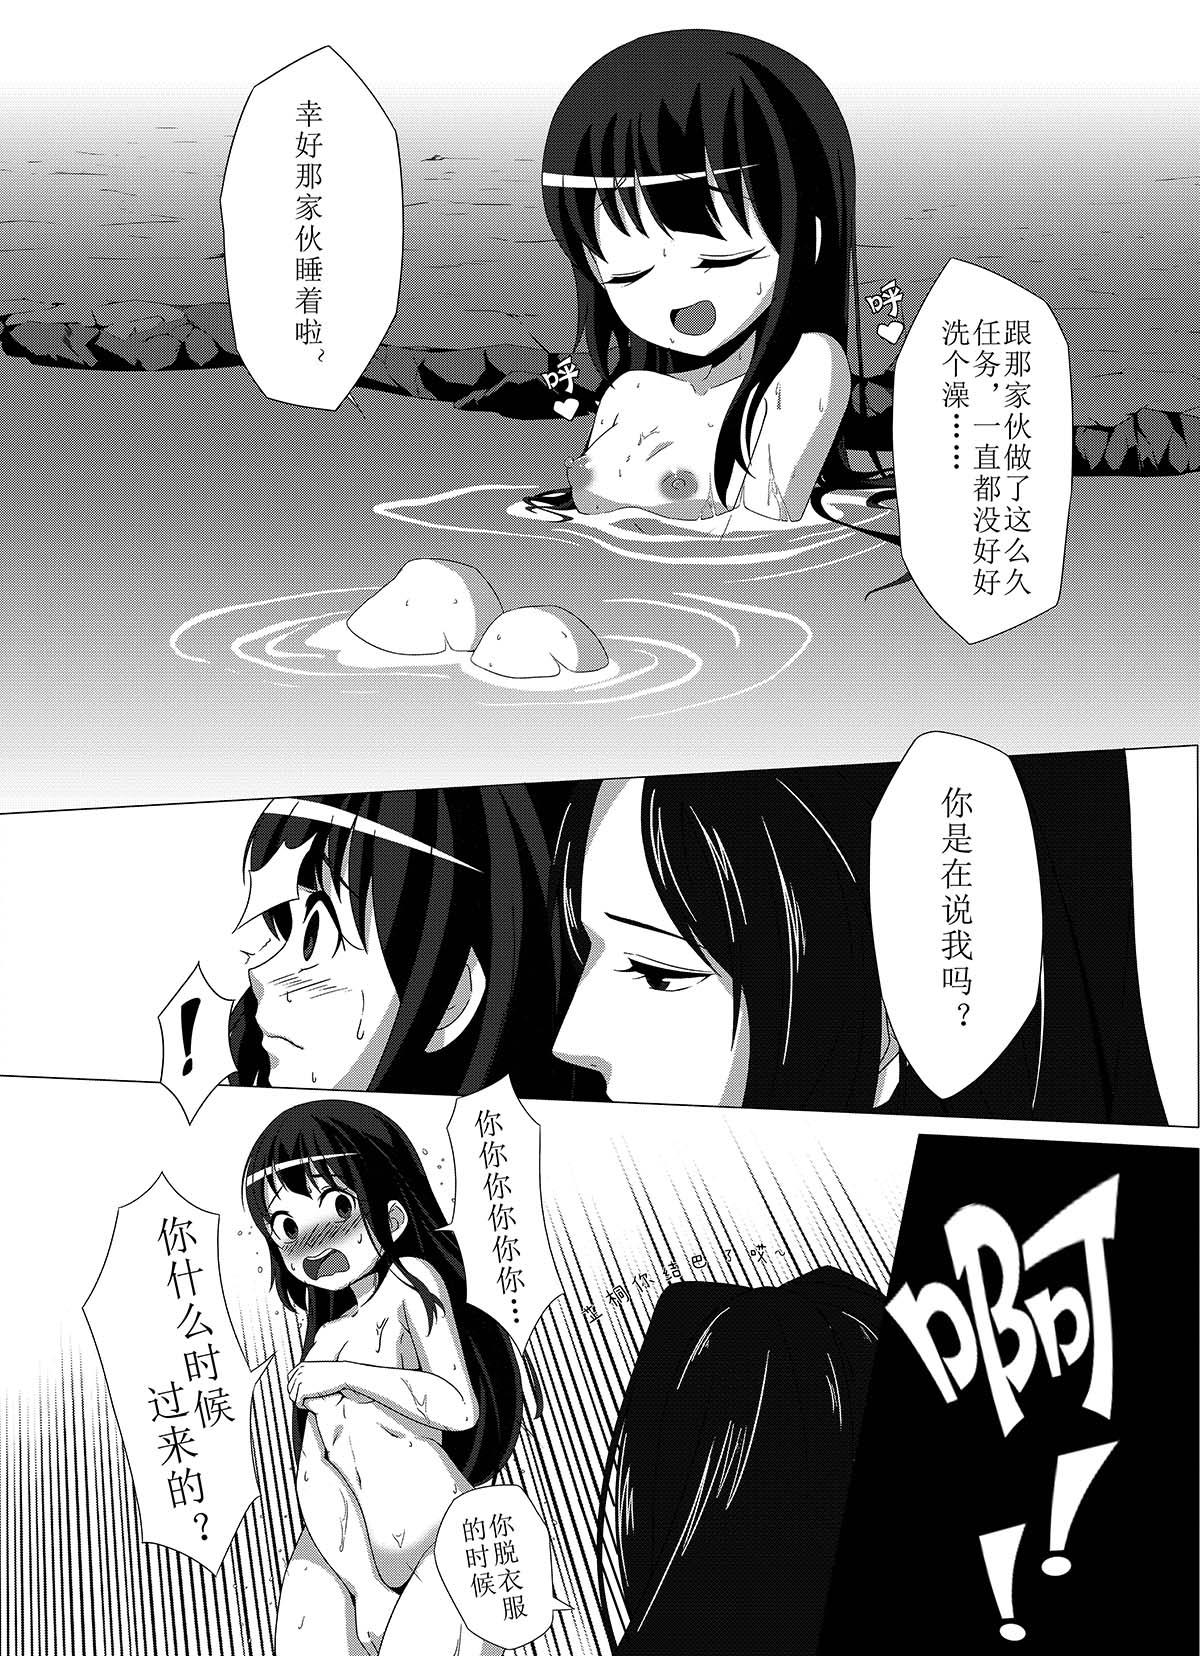 Para 军萝纯爱本 - Original Metendo - Page 8